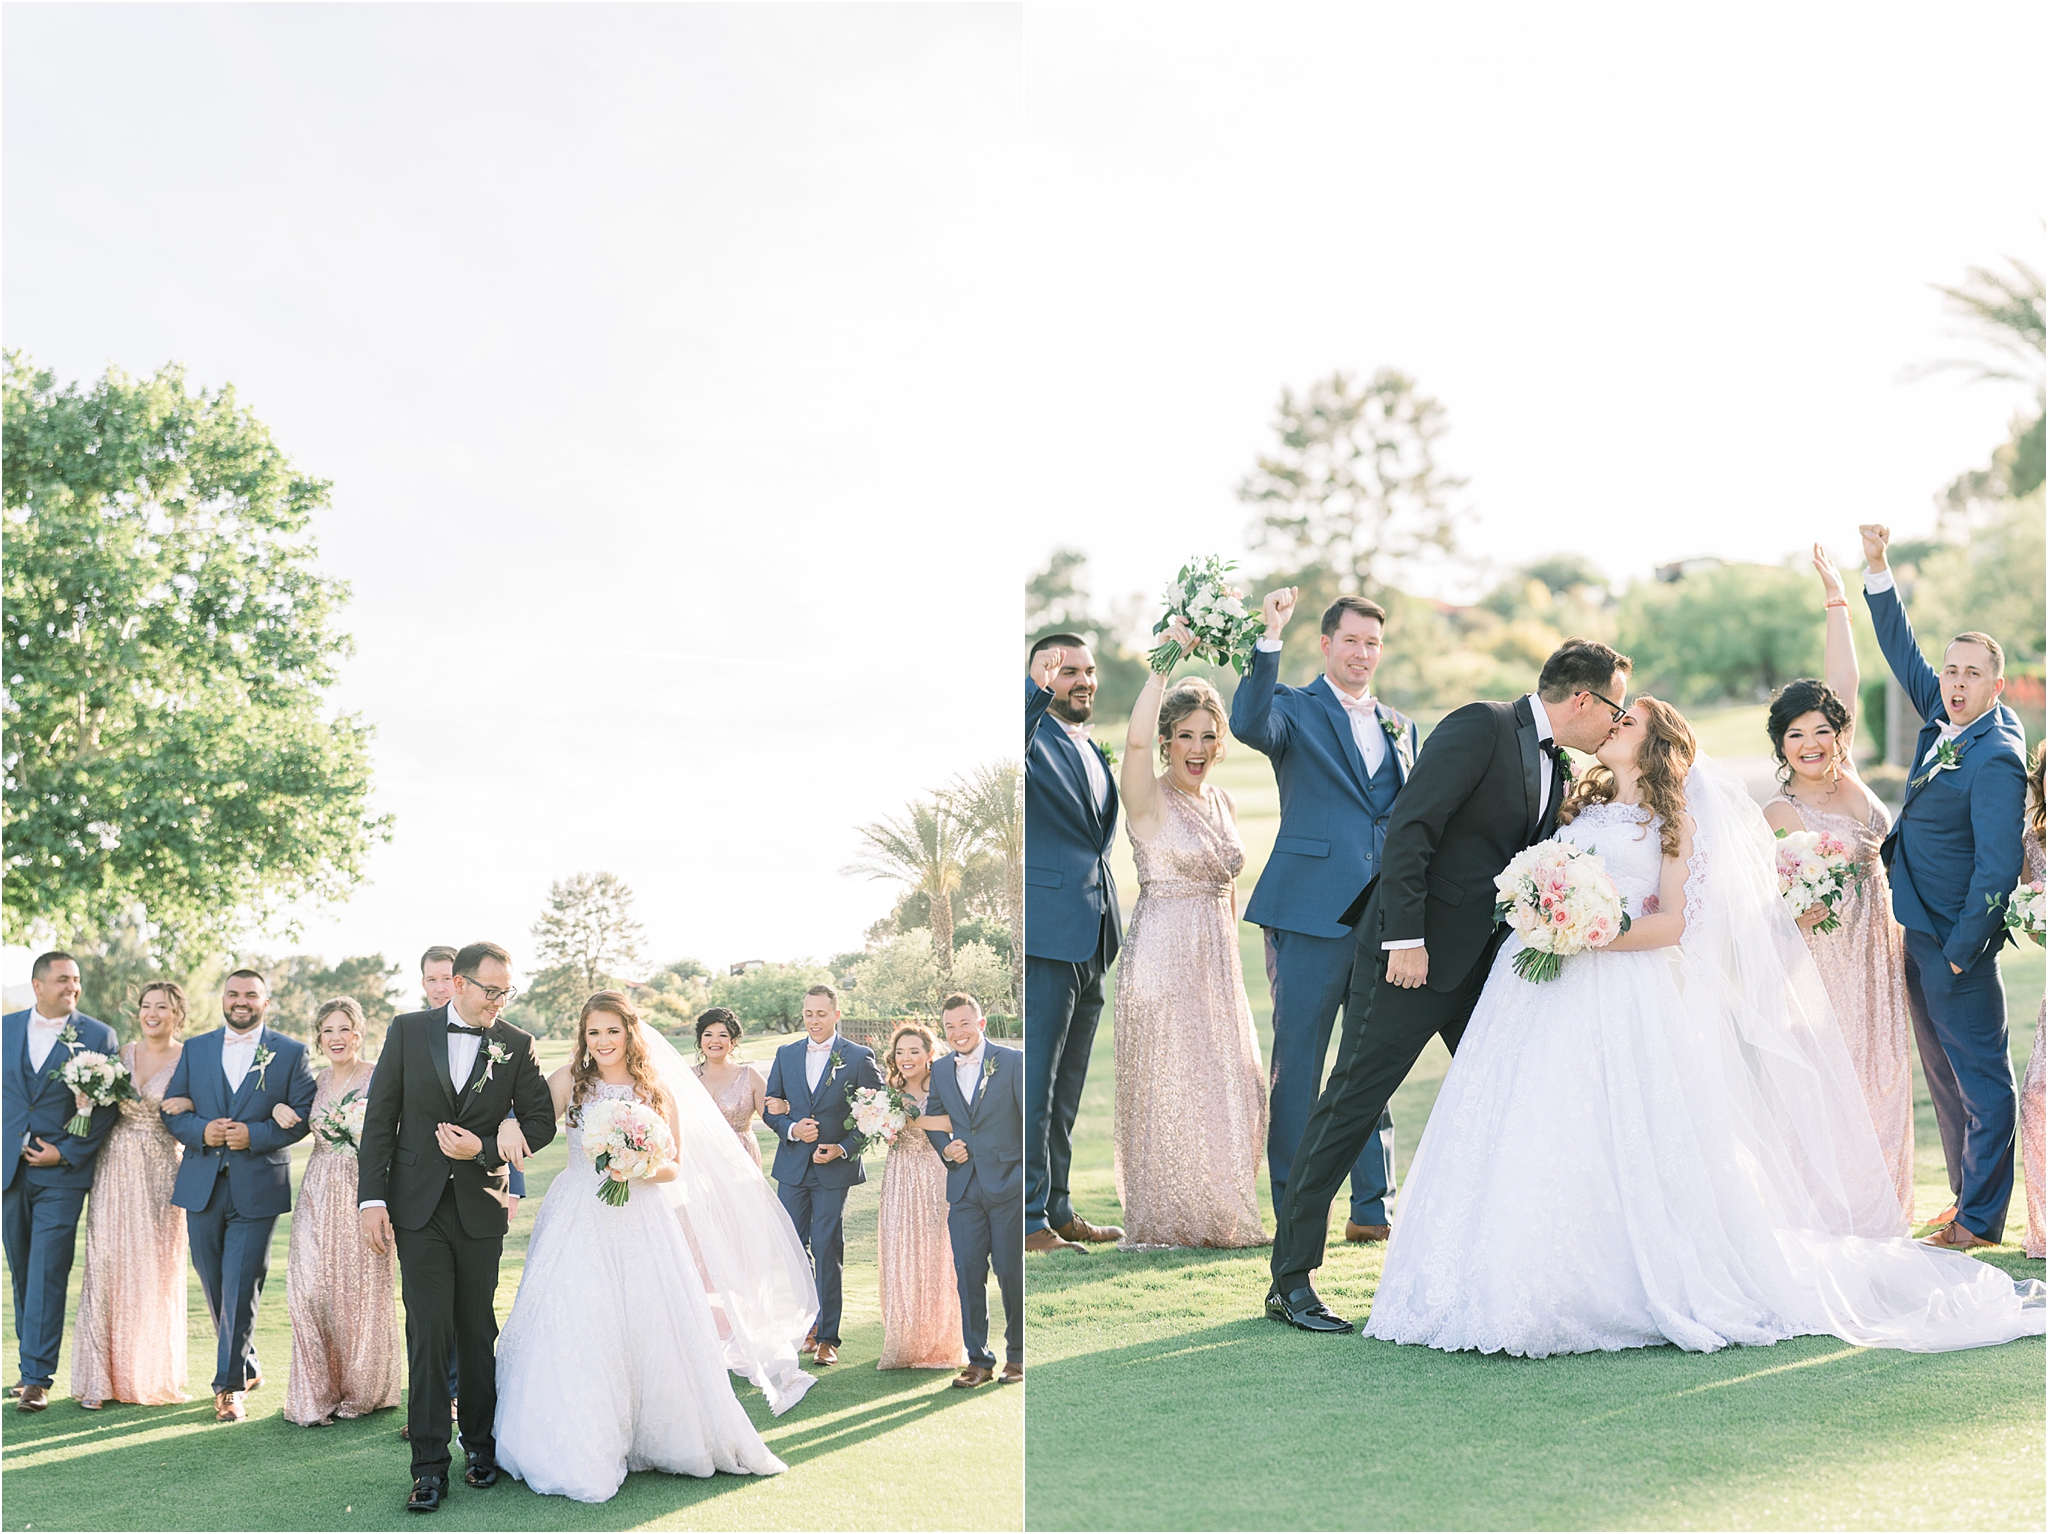 Omni Wedding Photographer | Tucson AZ | Ligia and Arturo bridal party photos | Tucson Wedding Photographer | West End Photography